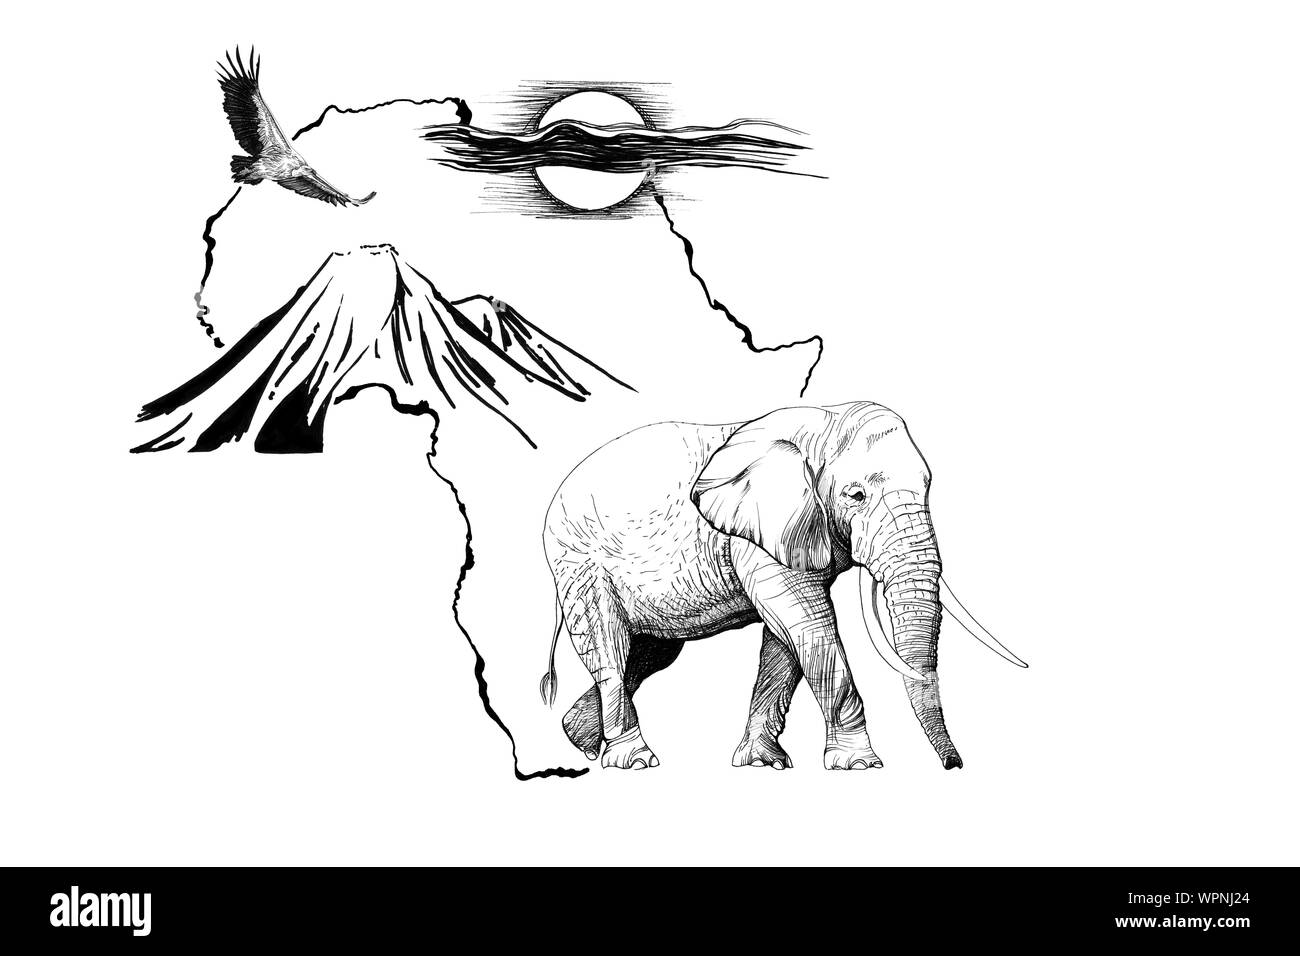 Sur l'éléphant d'Afrique carte de fond avec du Kilimandjaro mountain, vautour et soleil. Collection d'illustrations faites à la main (originaux, pas de traces) Banque D'Images